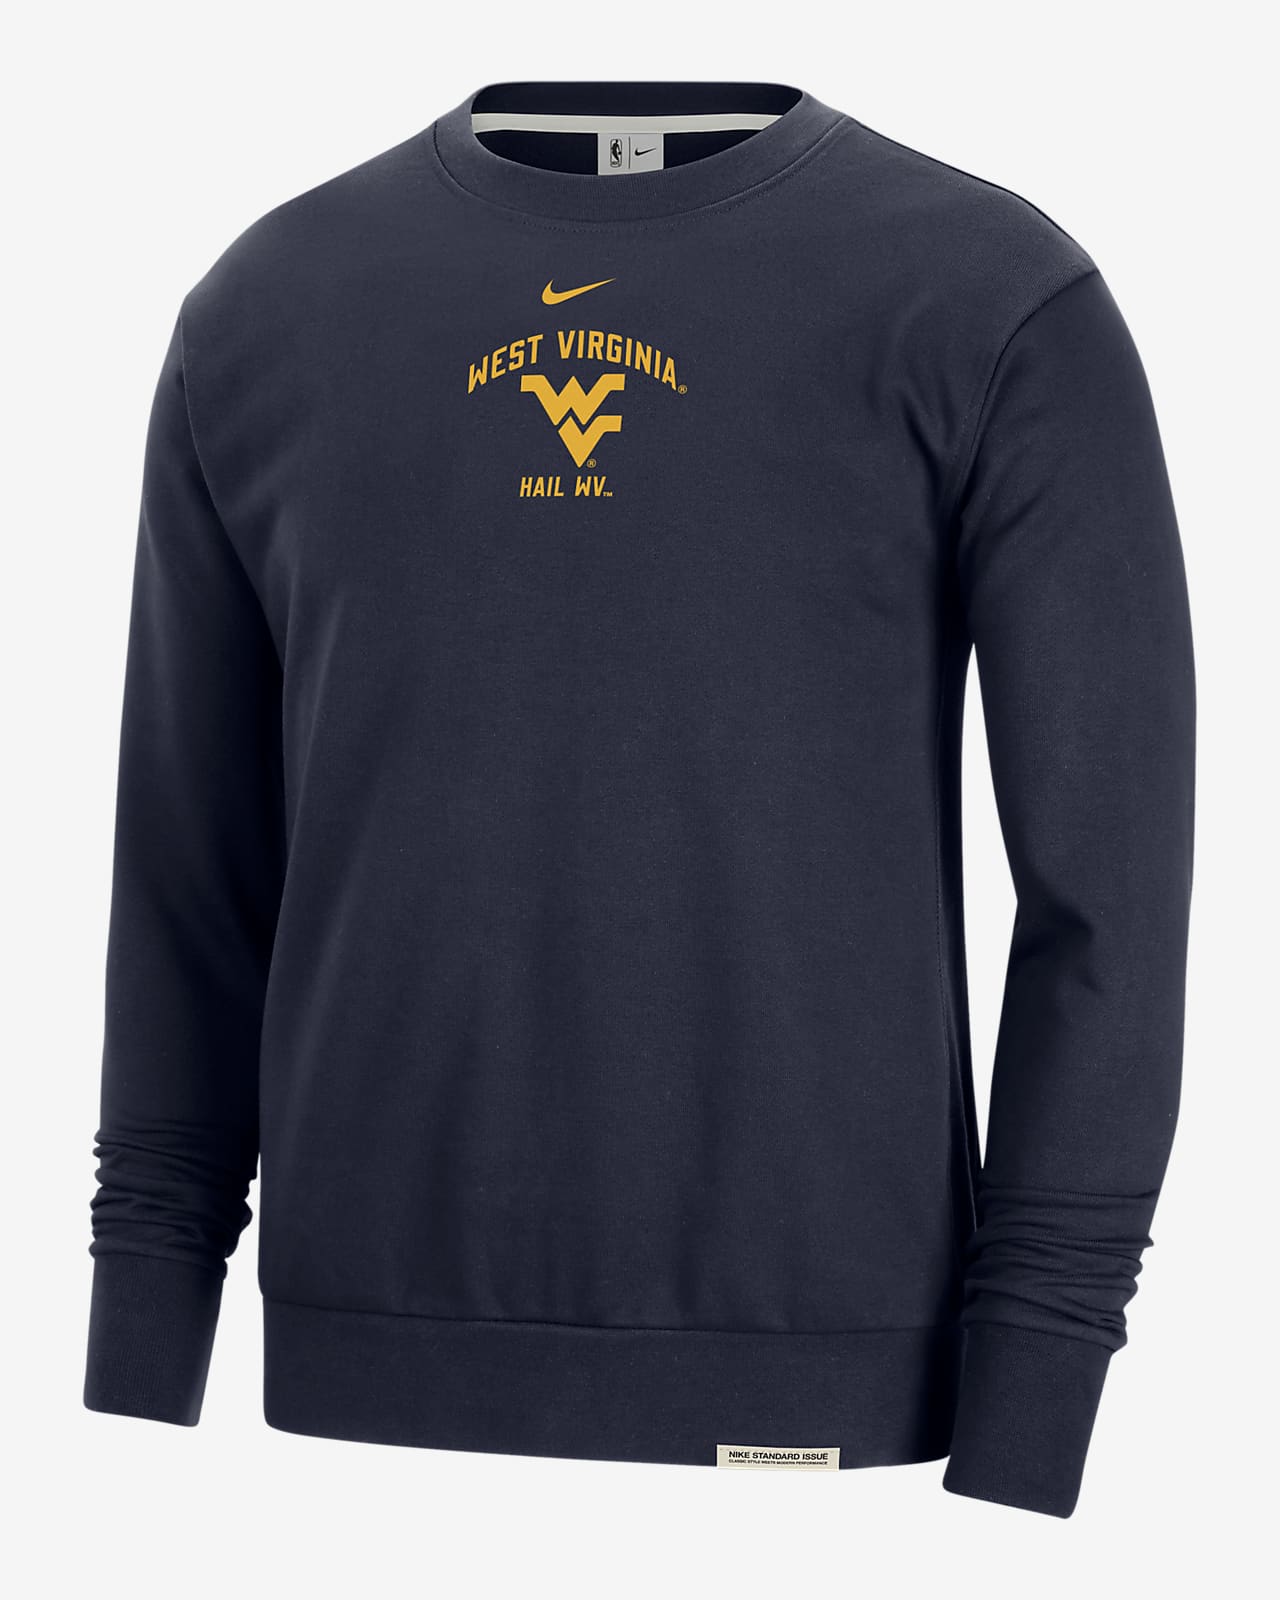 West Virginia Standard Issue Men's Nike College Fleece Crew-Neck Sweatshirt